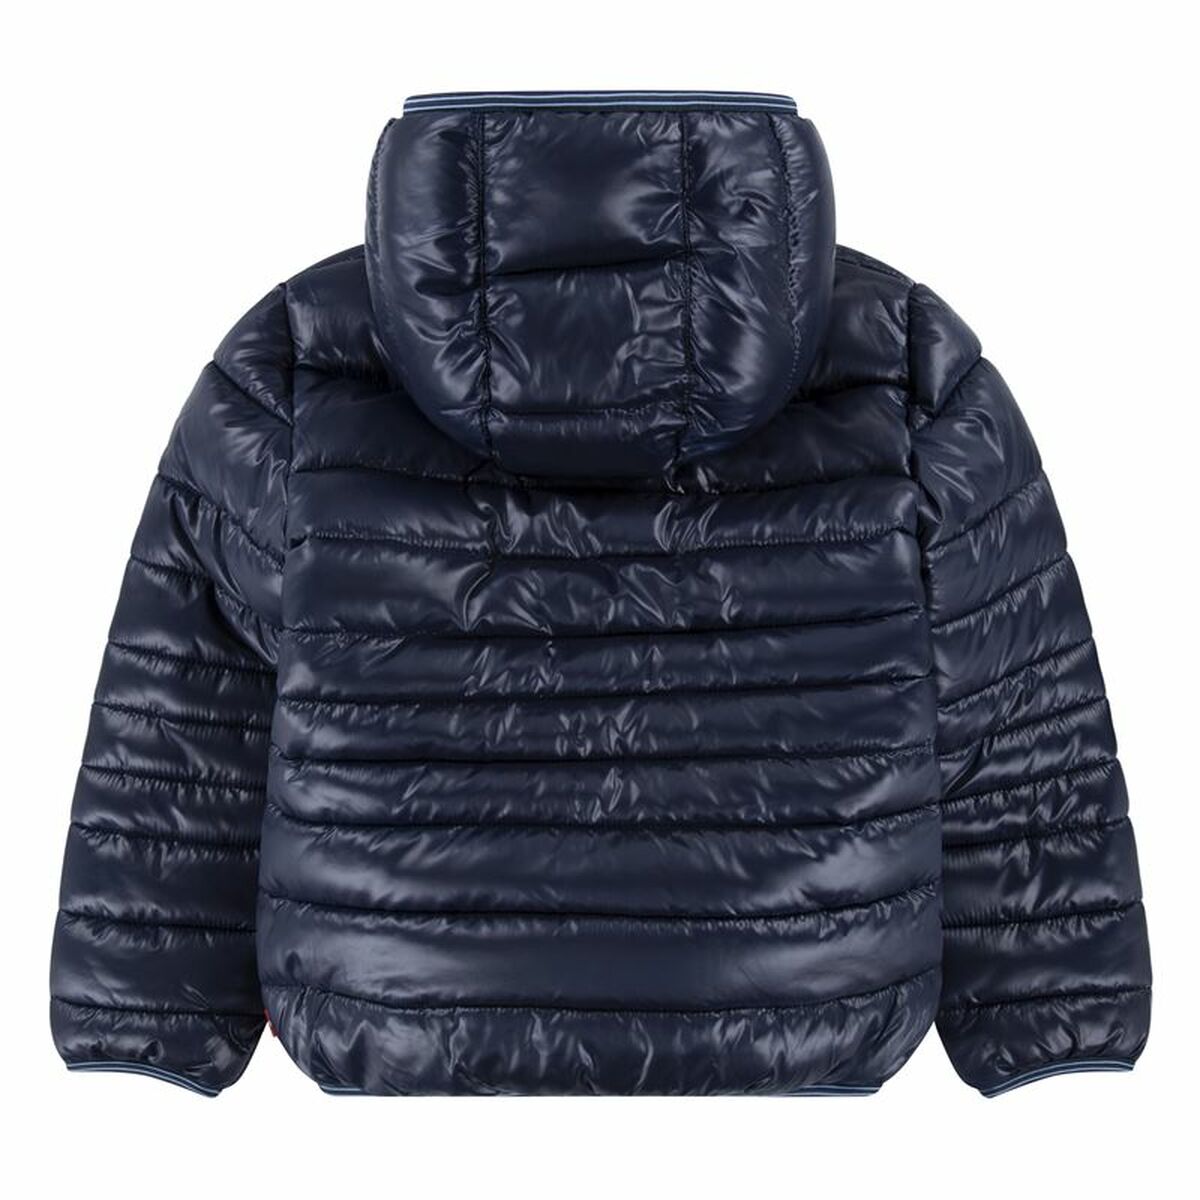 Children's Sports Jacket Levi's Sherpa Lined Mdwt Puffer J Dress Dark blue